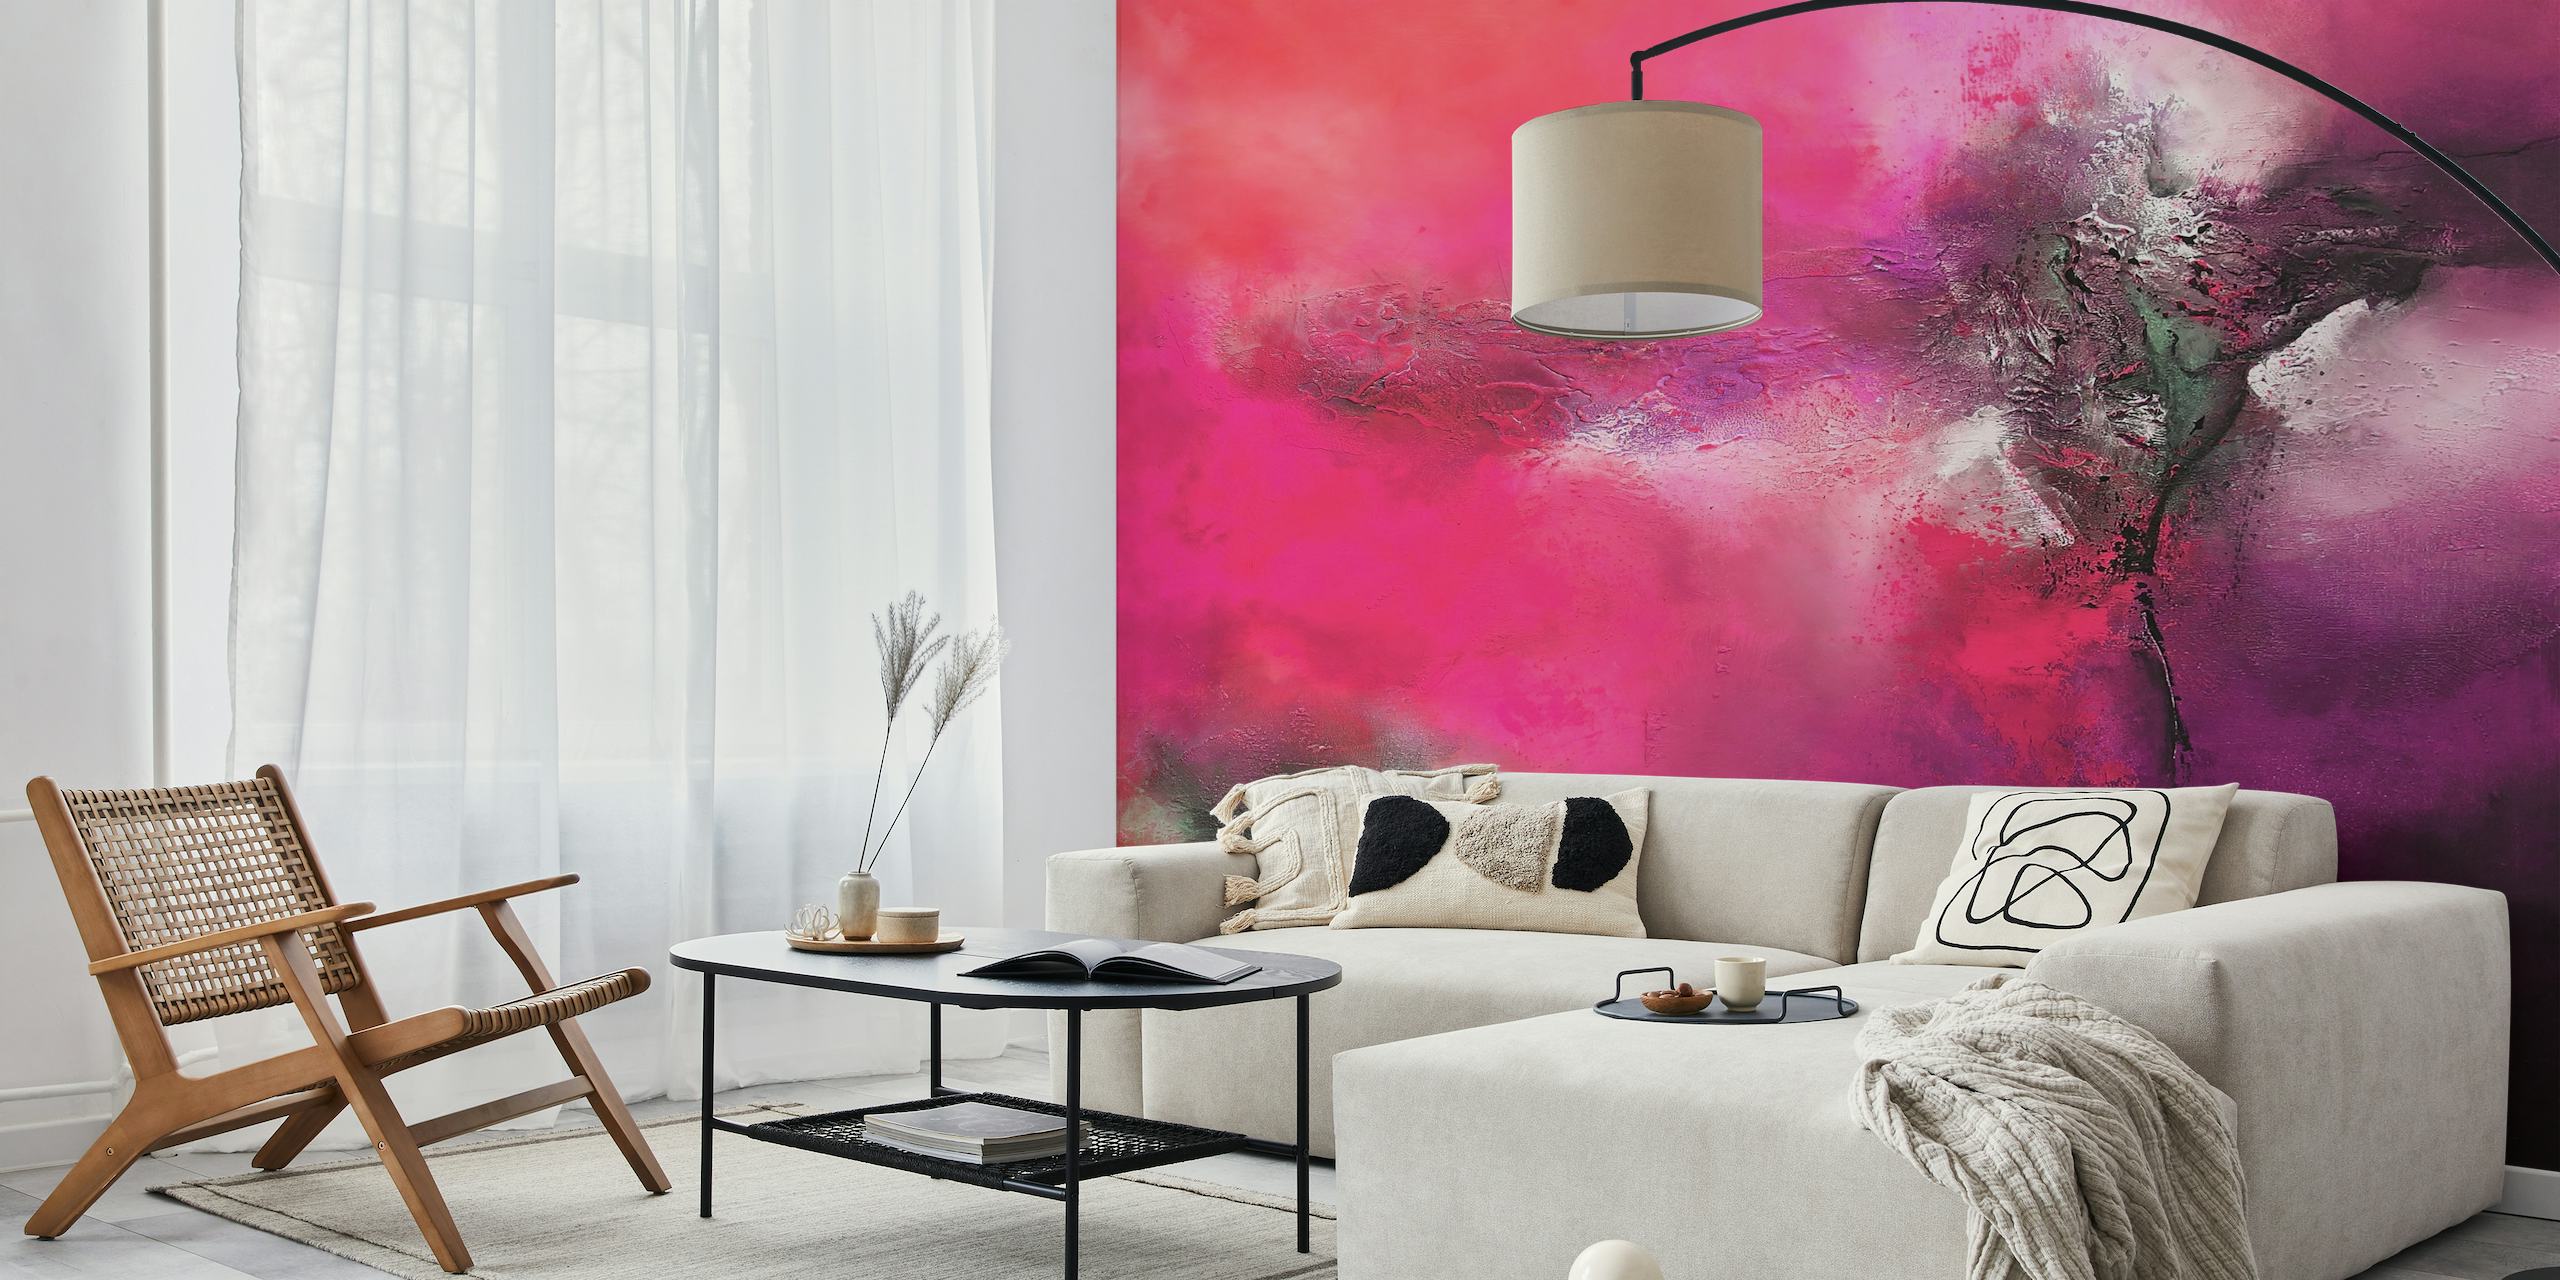 Abstrakt veggmaleri med levende rosa og grå nyanser, som ligner uttrykksfull kunst